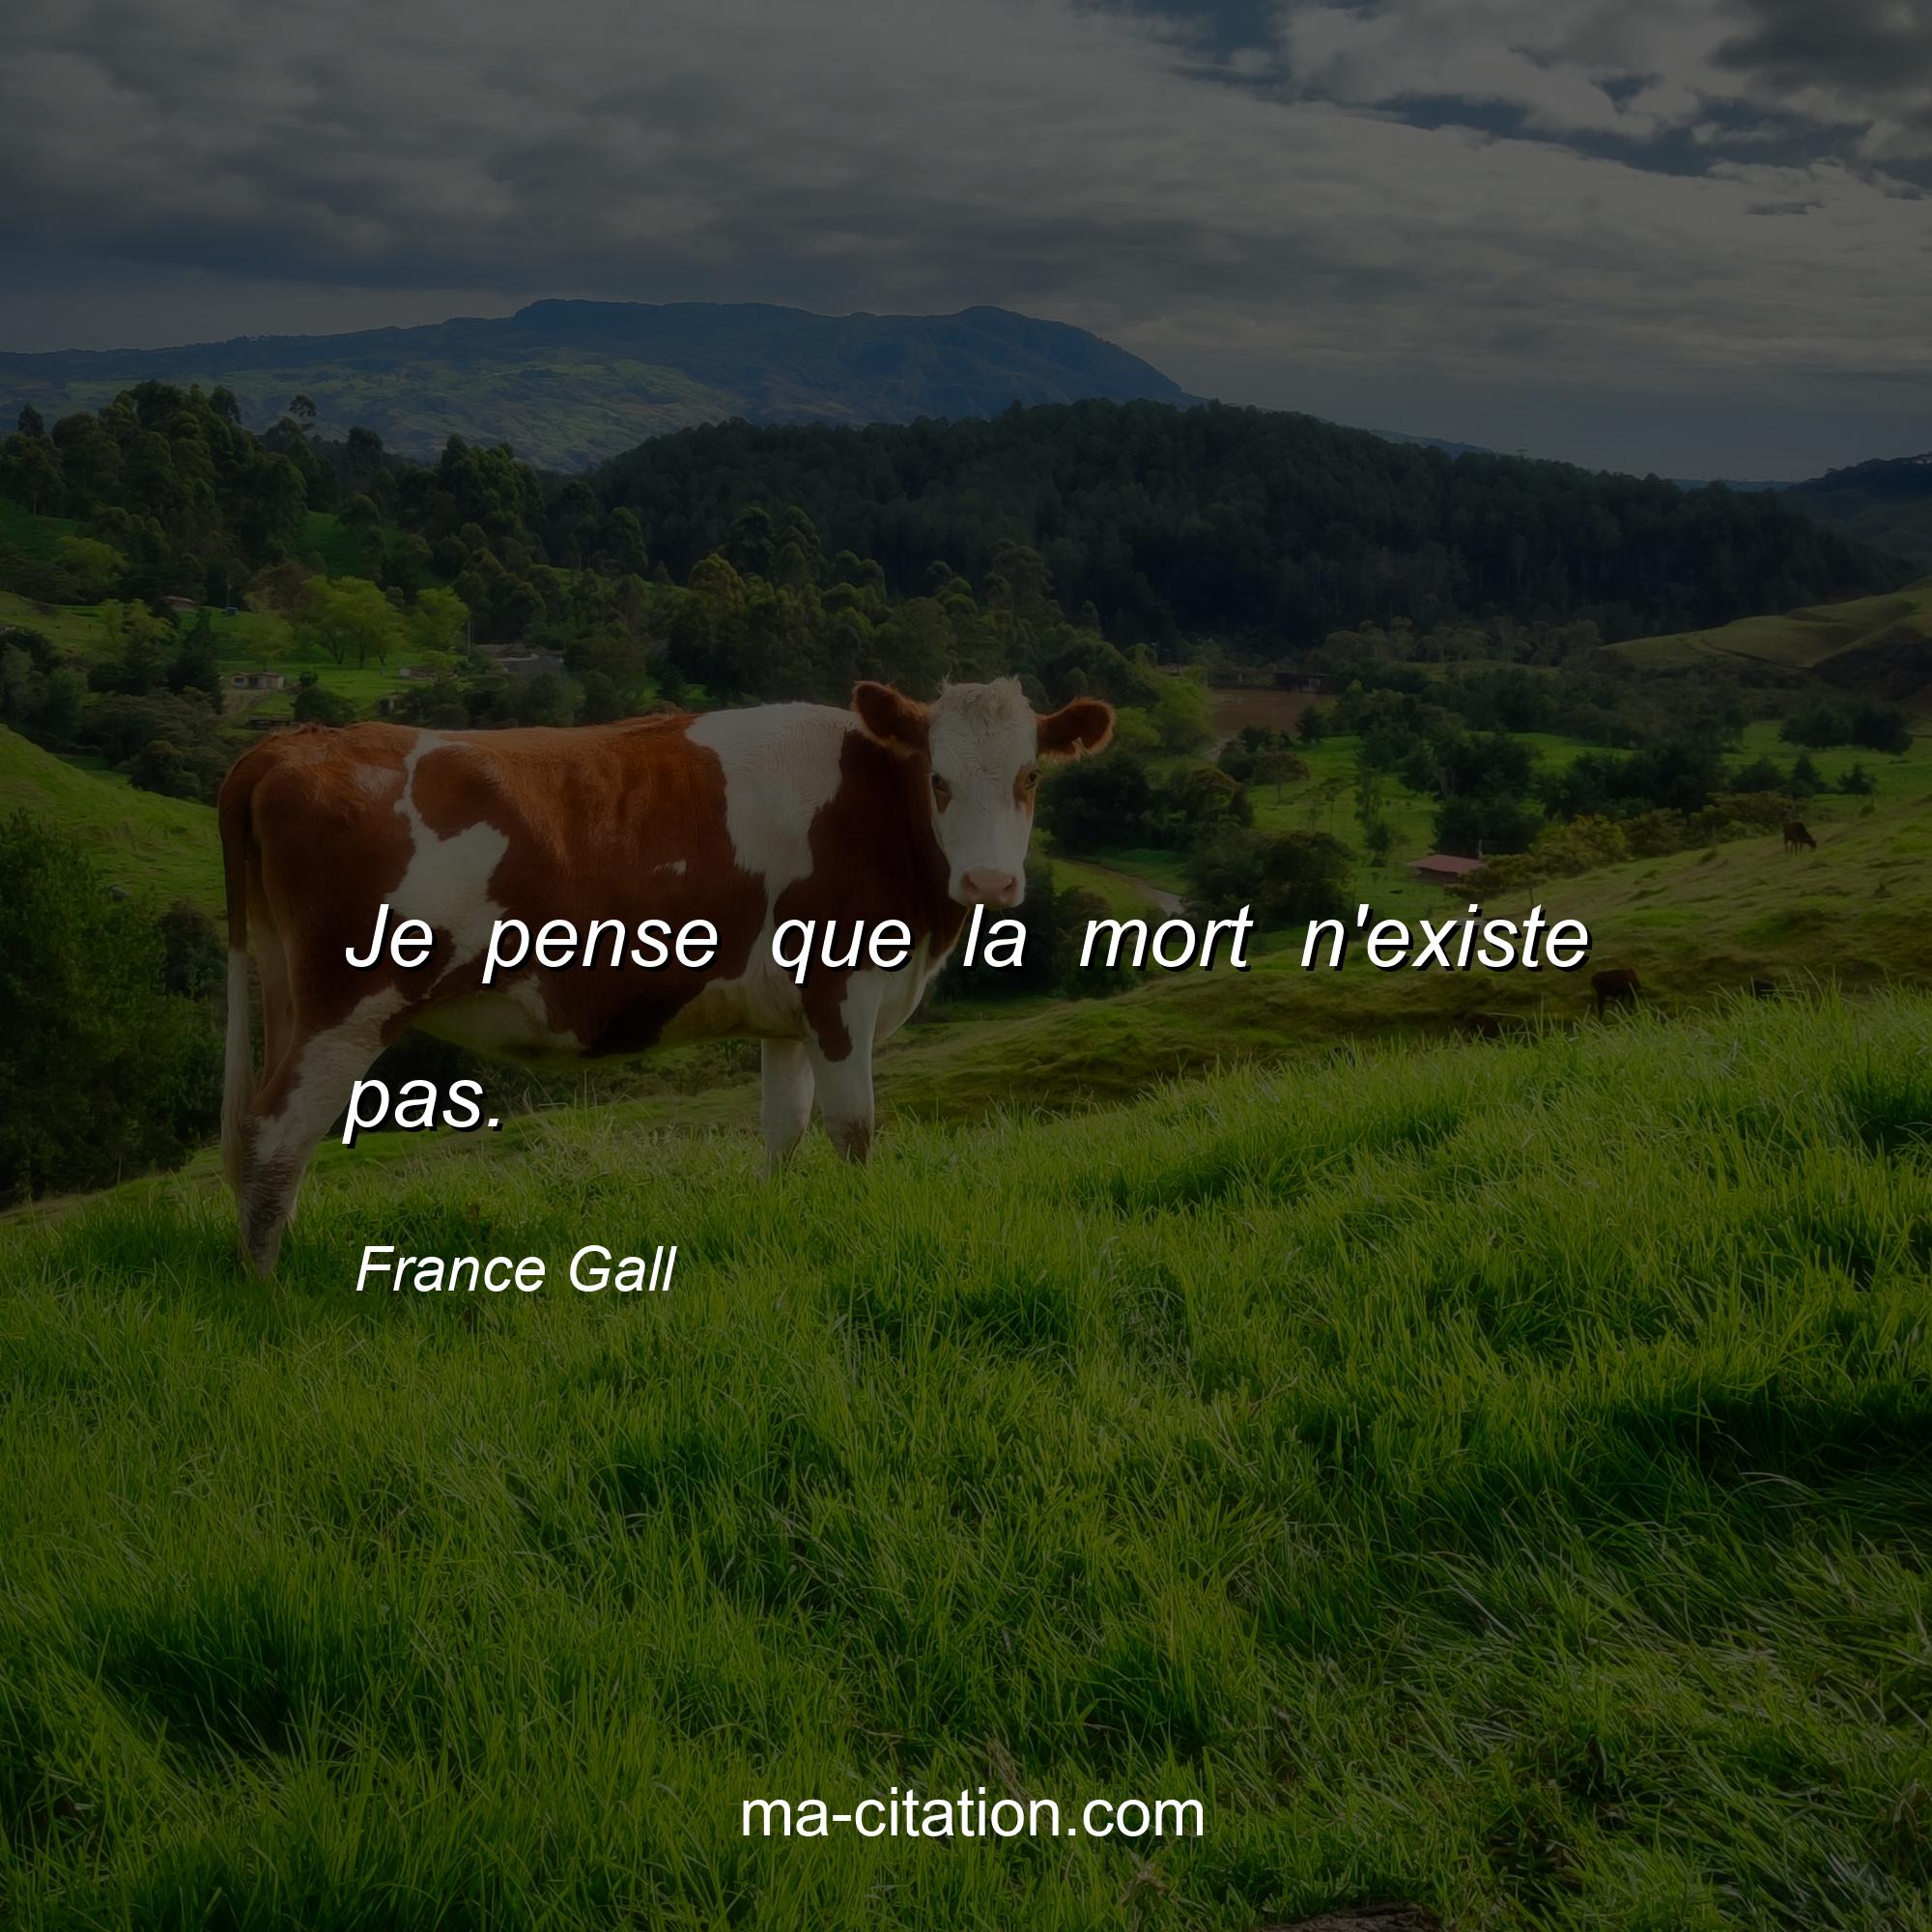 France Gall : Je pense que la mort n'existe pas.